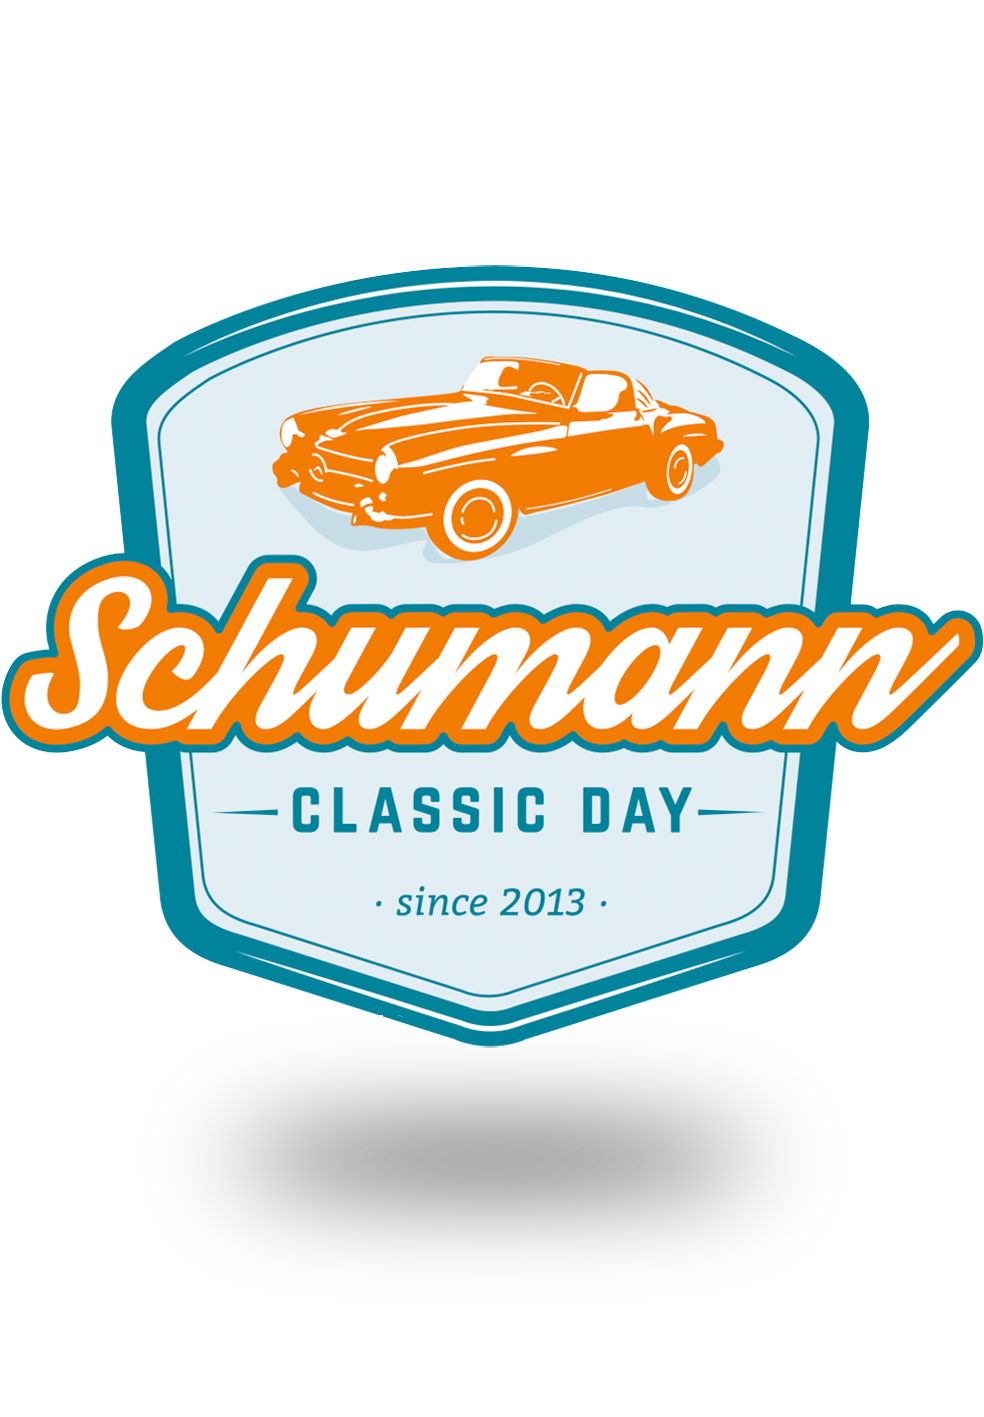 Schumann Classic Day Dortmund